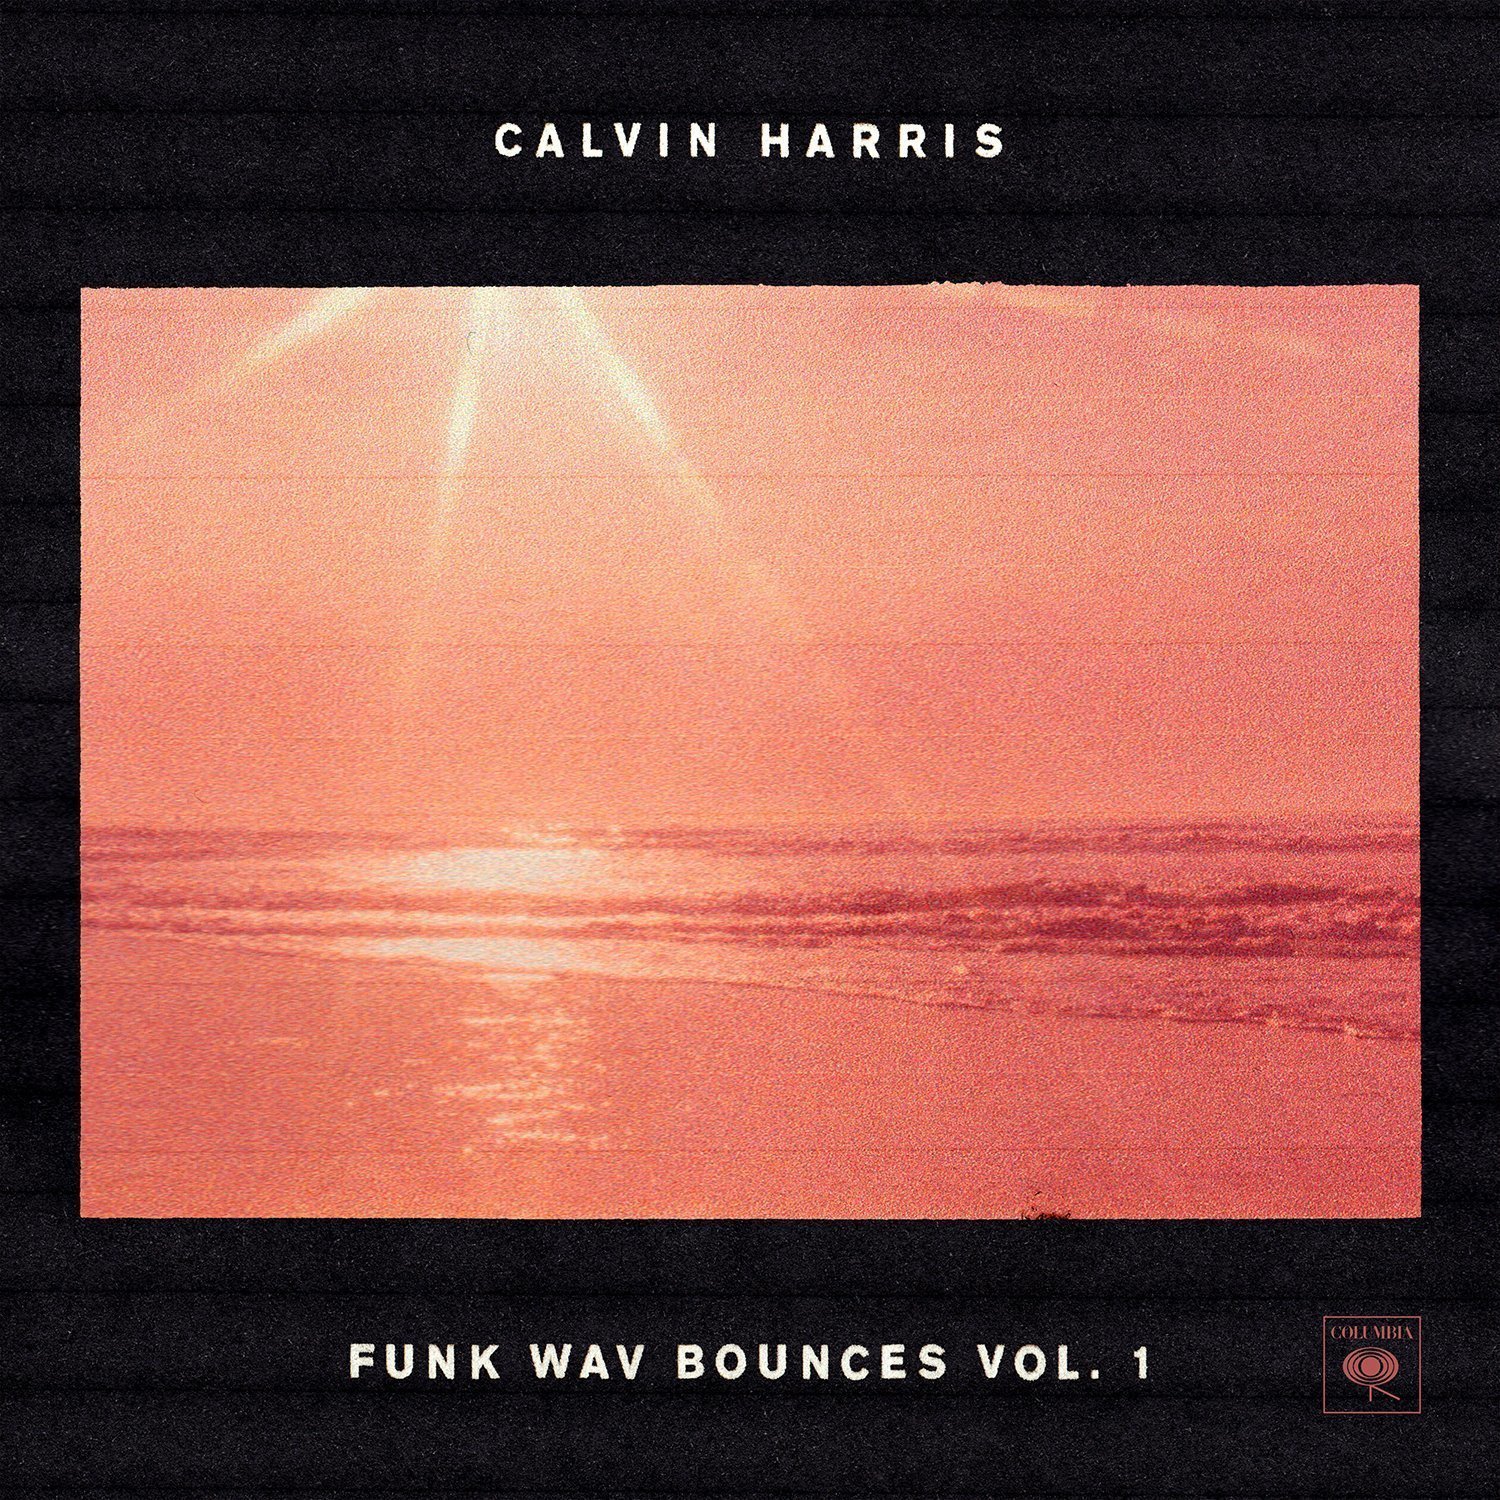 Vinyl Record Calvin Harris Funk Wav Bounces Vol. 1 (2 LP)